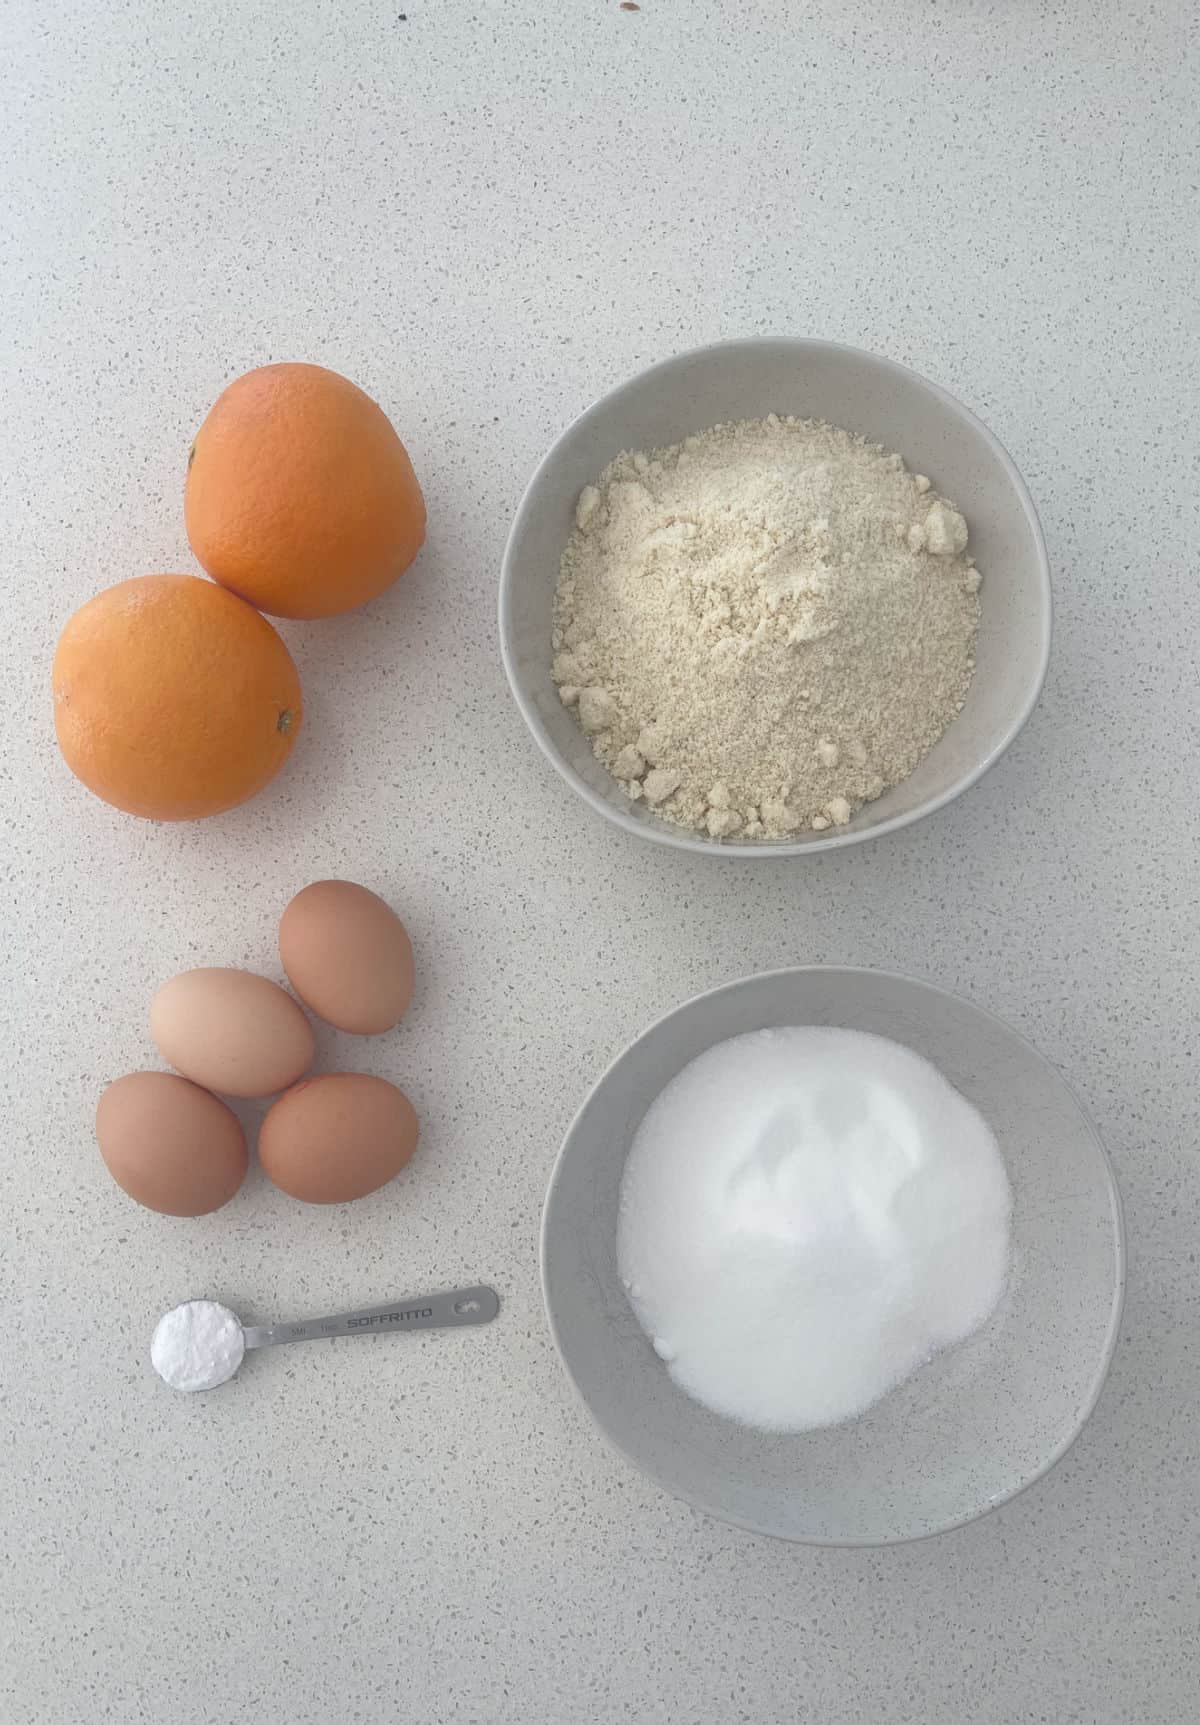 Ingredients to make a whole orange cake.